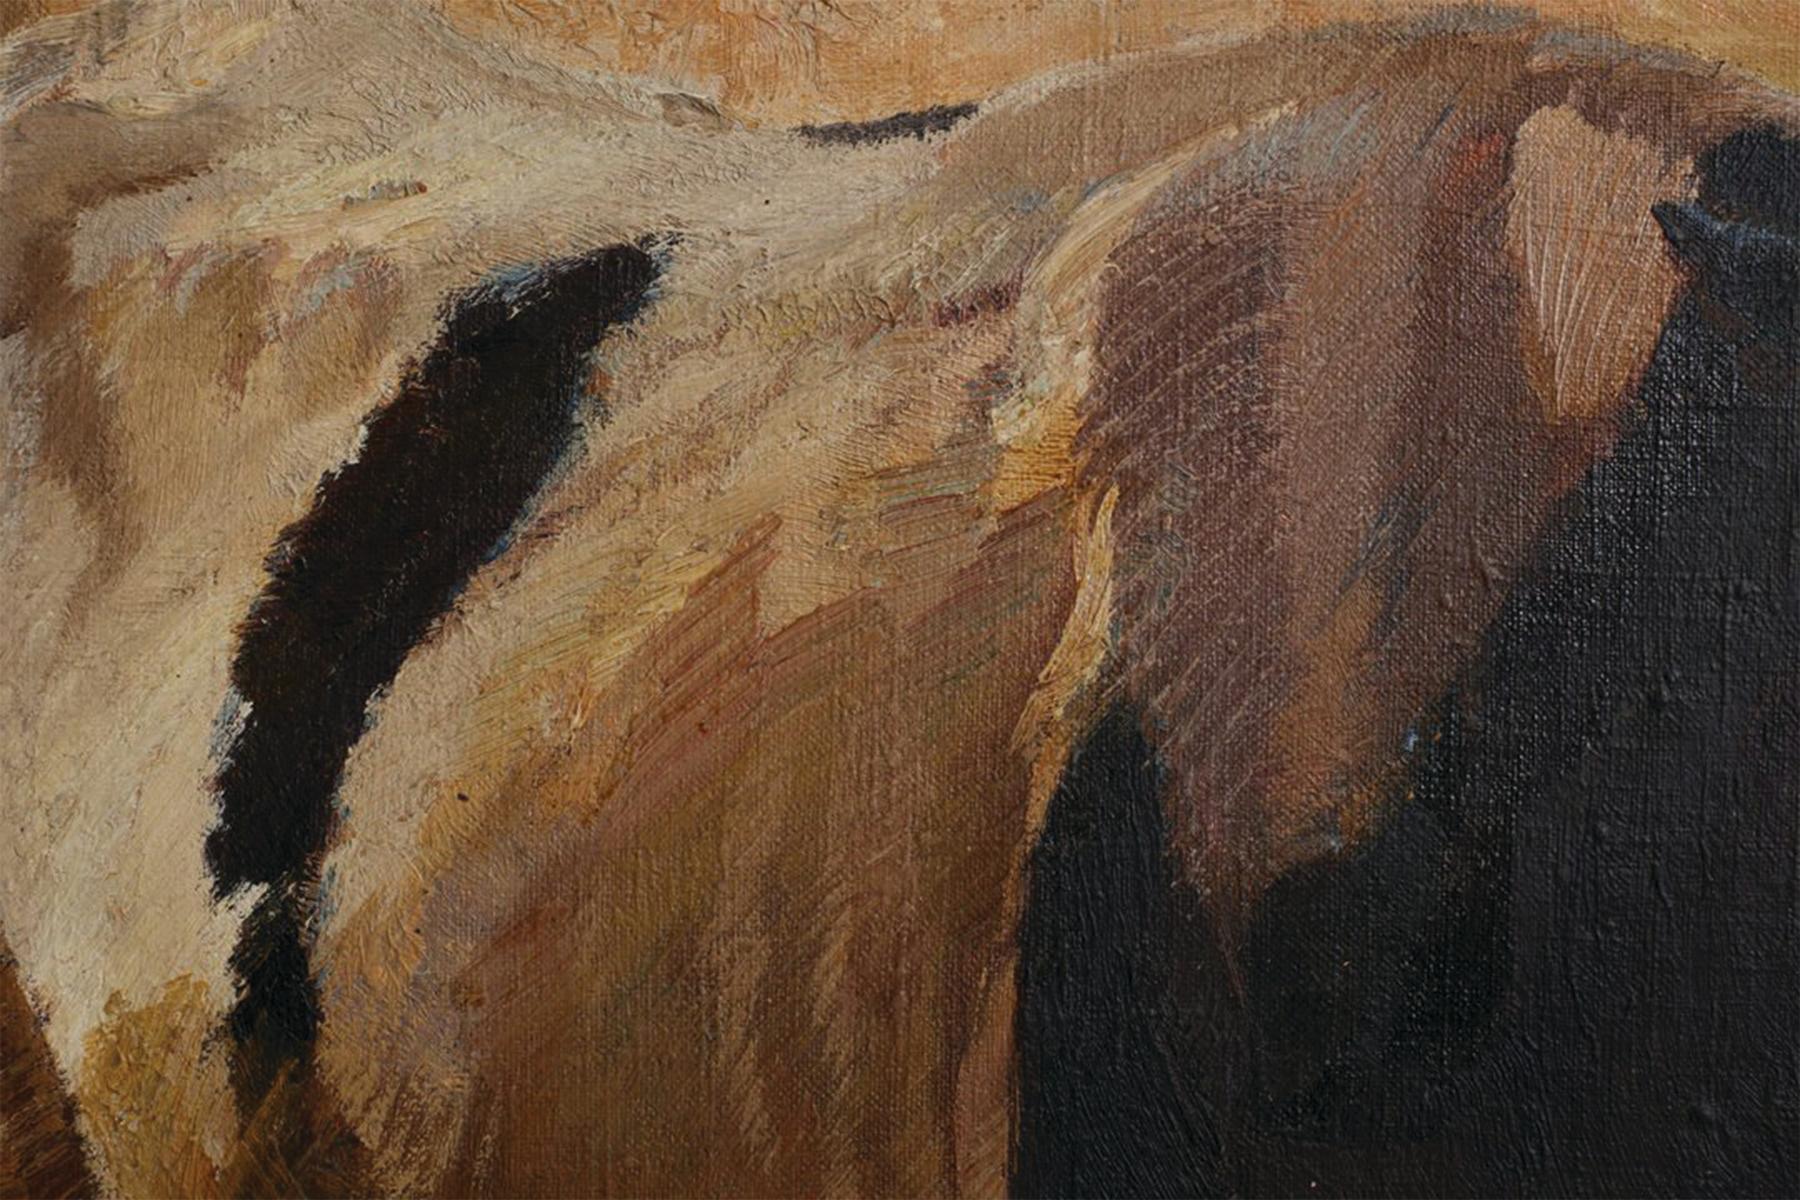 Henry George Keller (Amerikaner, 1868-1949)
Studie zur Rinderserie, 1901
Öl auf Leinwand
Verso signiert
22 x 26 Zoll
28,5 x 33 Zoll, gerahmt

Keller, ein führender Maler in Cleveland, wurde am 3. April 1869 auf See vor Nova Scotia geboren.  Seine